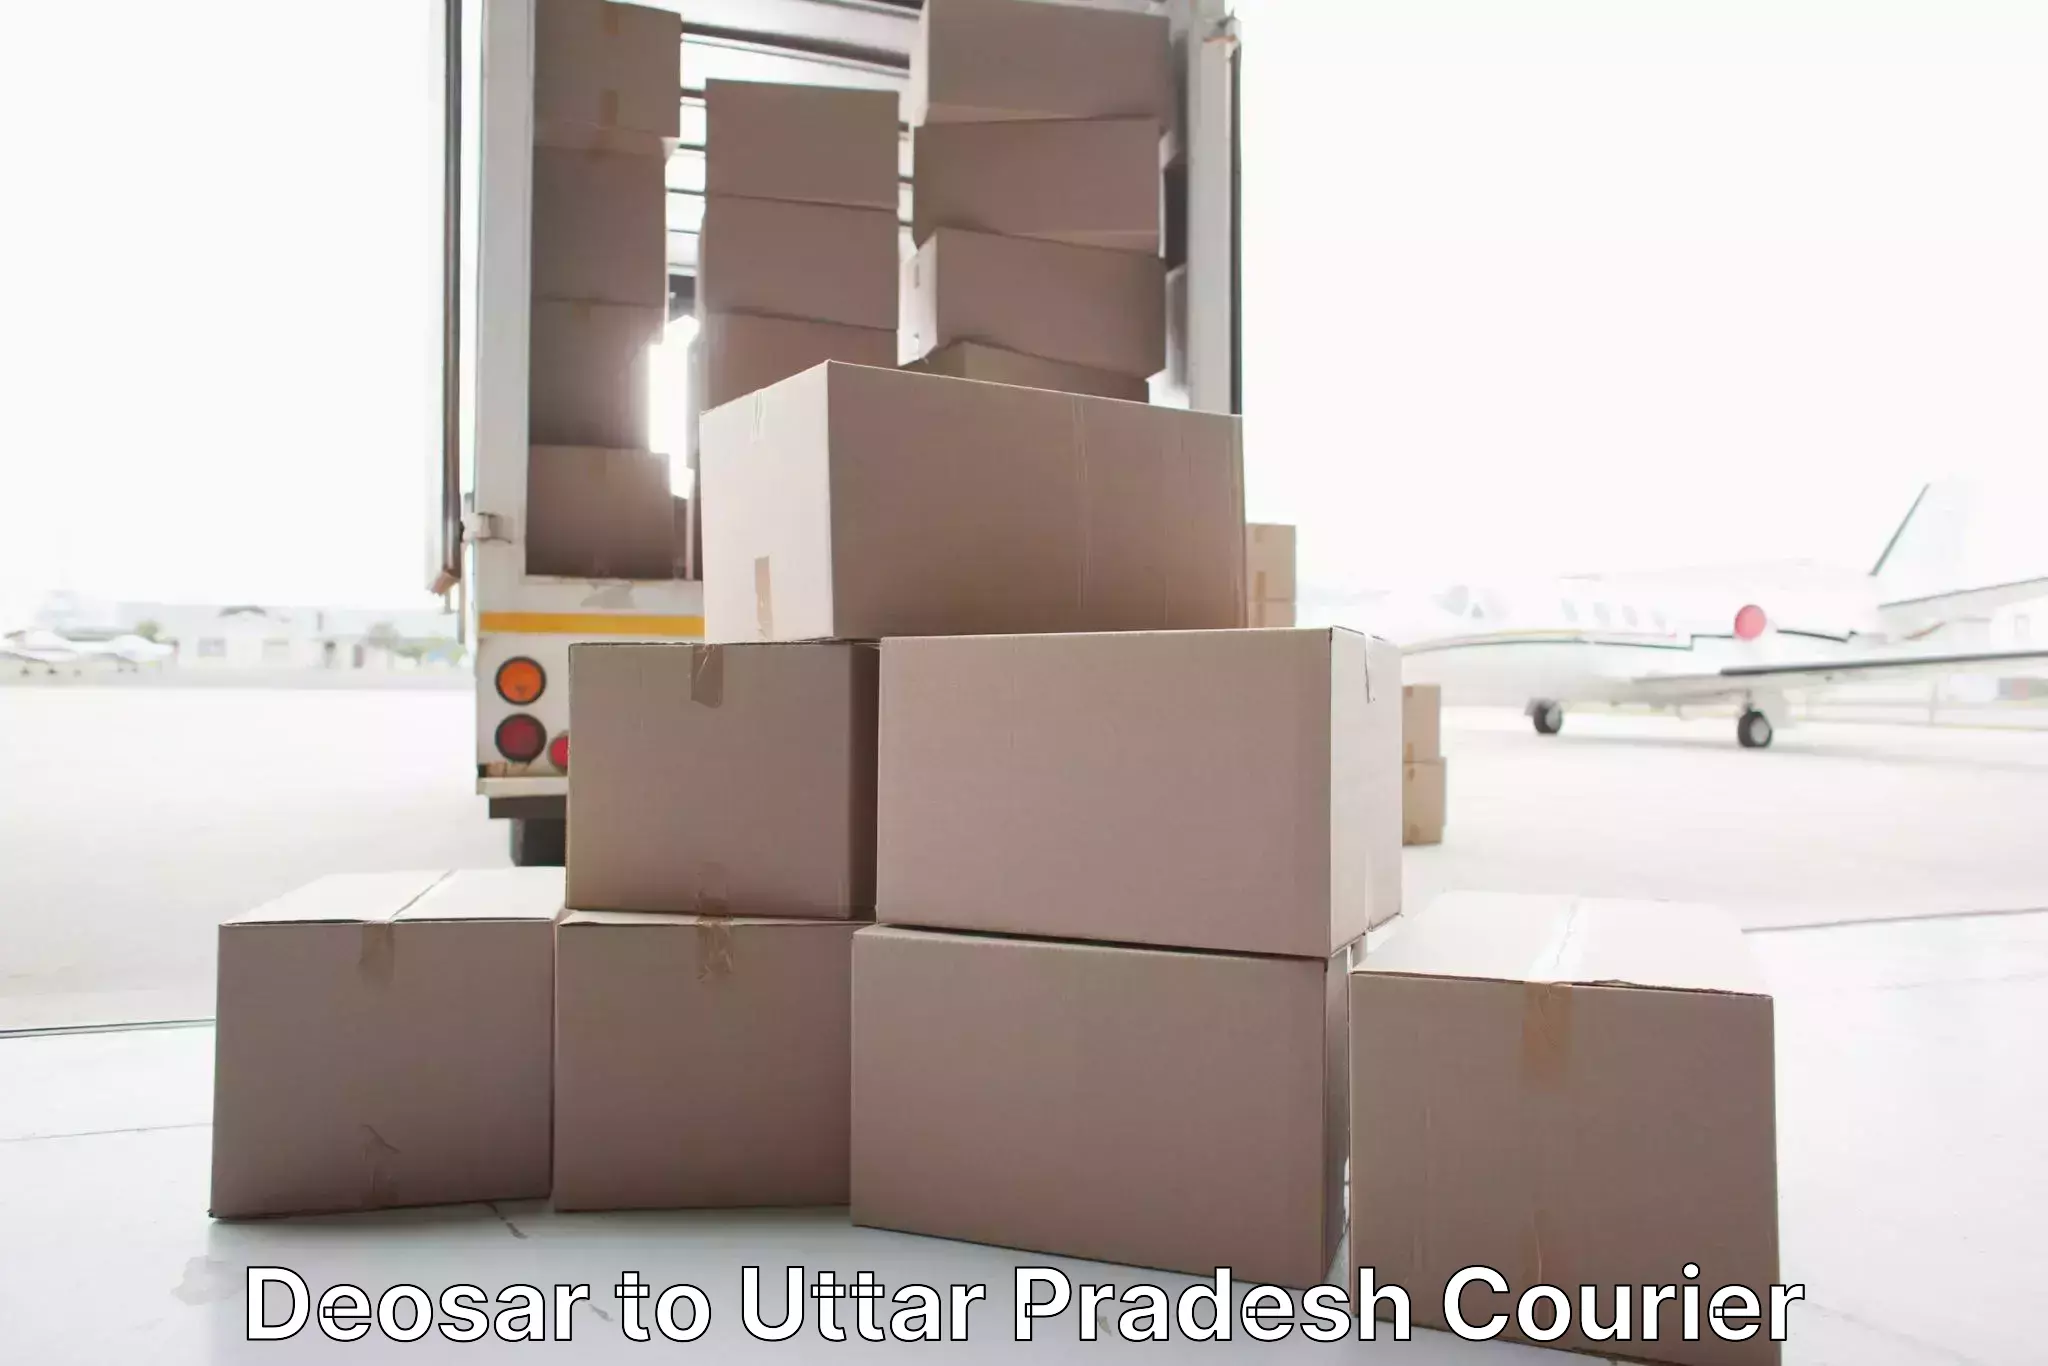 Professional goods transport Deosar to Khurja